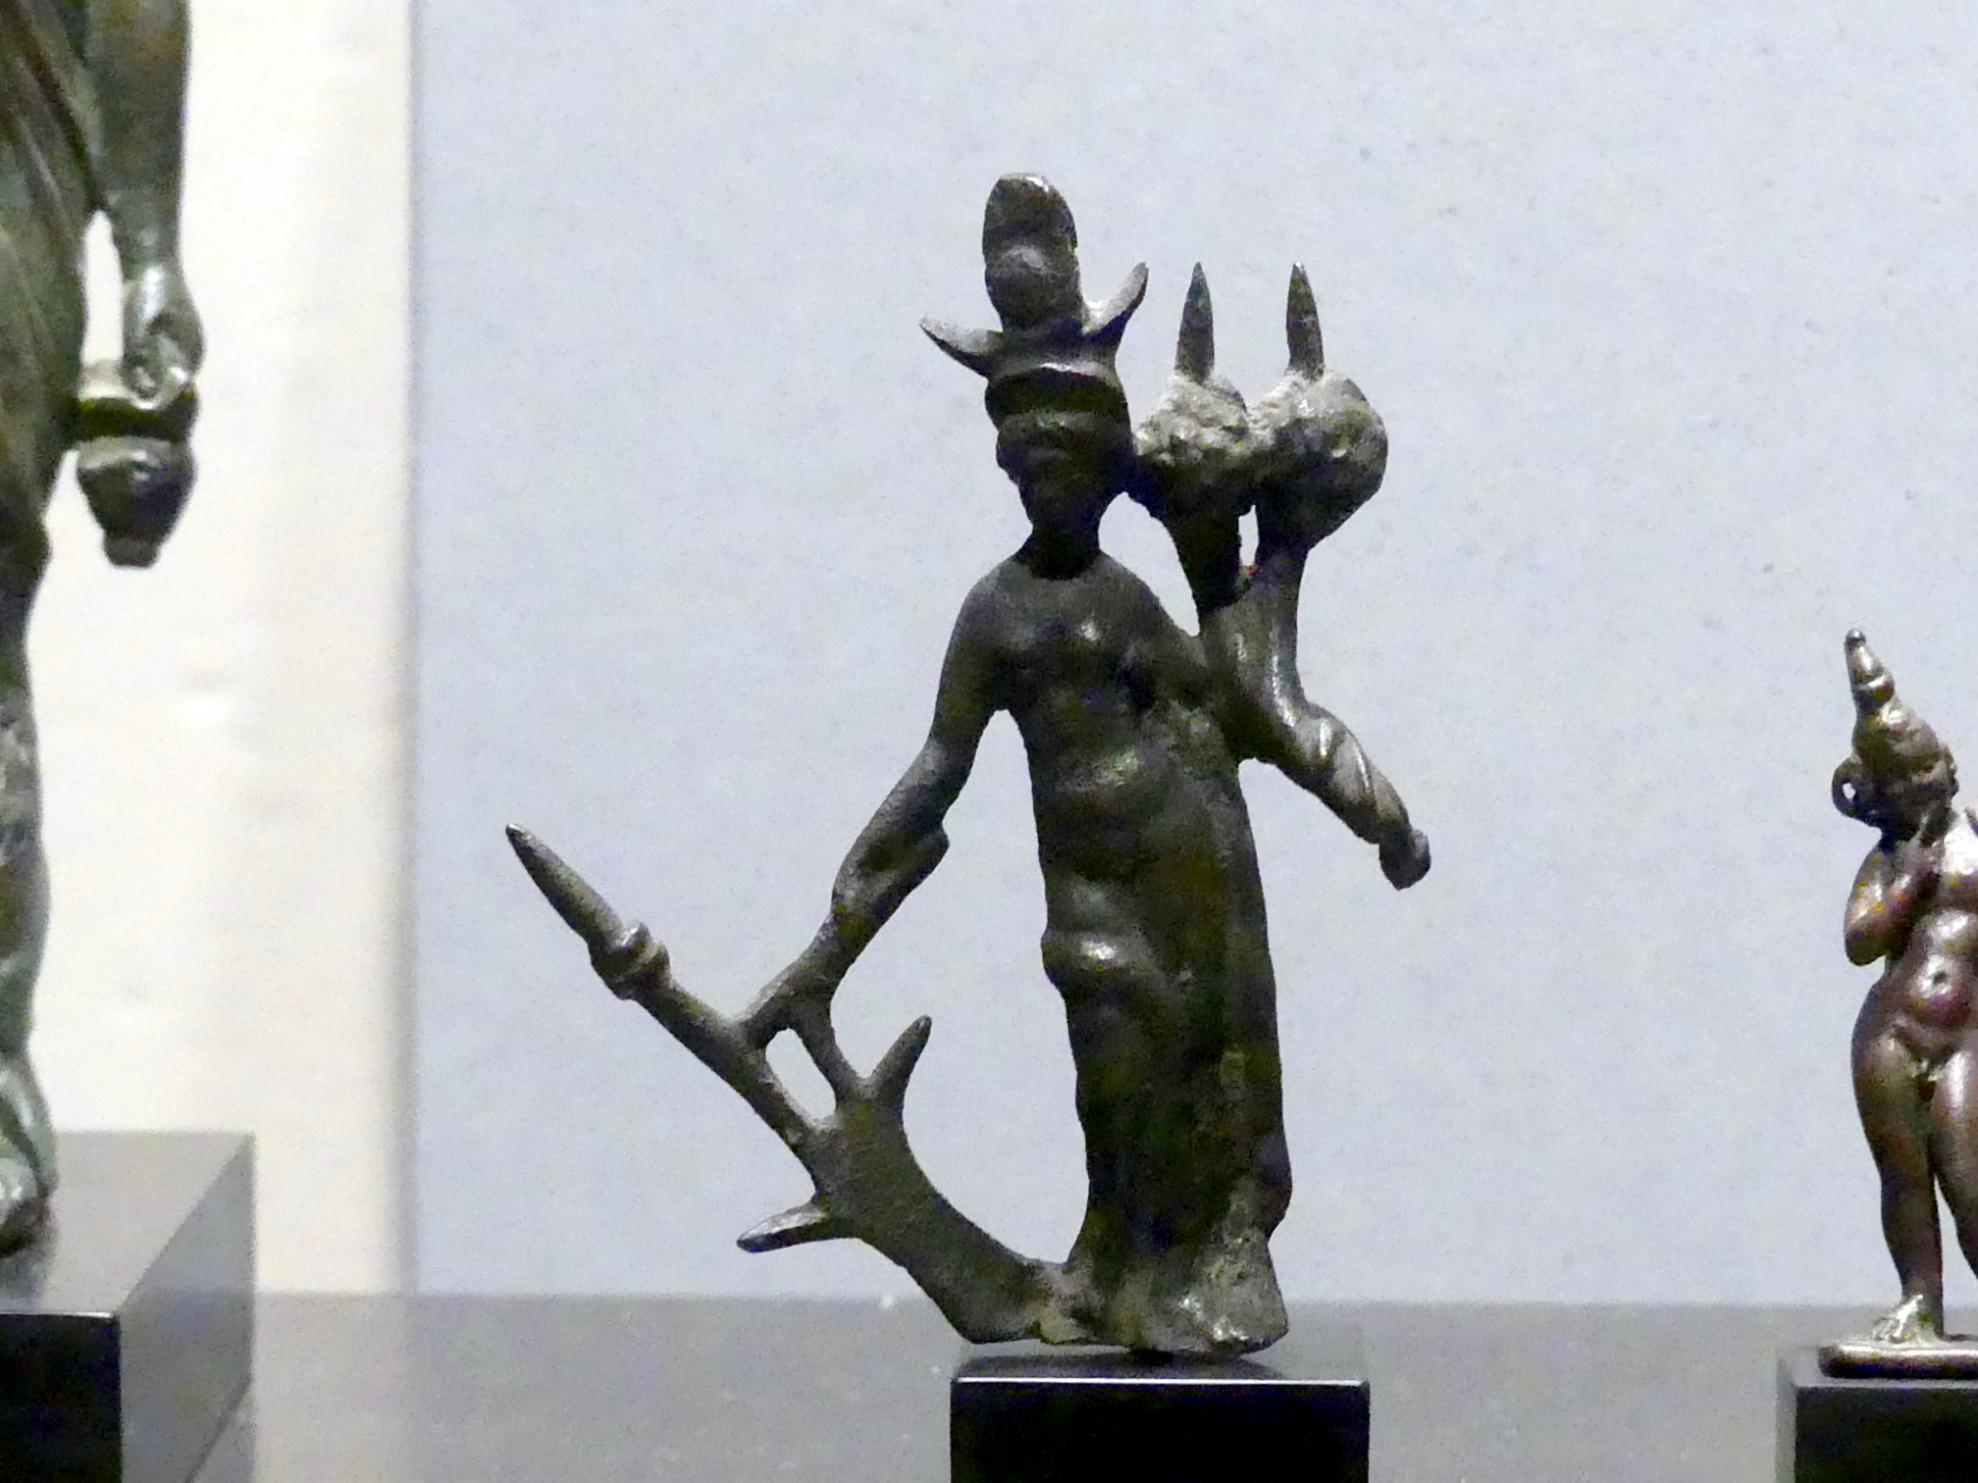 Figur der Göttin Isis Pelagia mit Füllhorn und Steuerruder, Römische Kaiserzeit, 27 v. Chr. - 54 n. Chr., 200 - 400